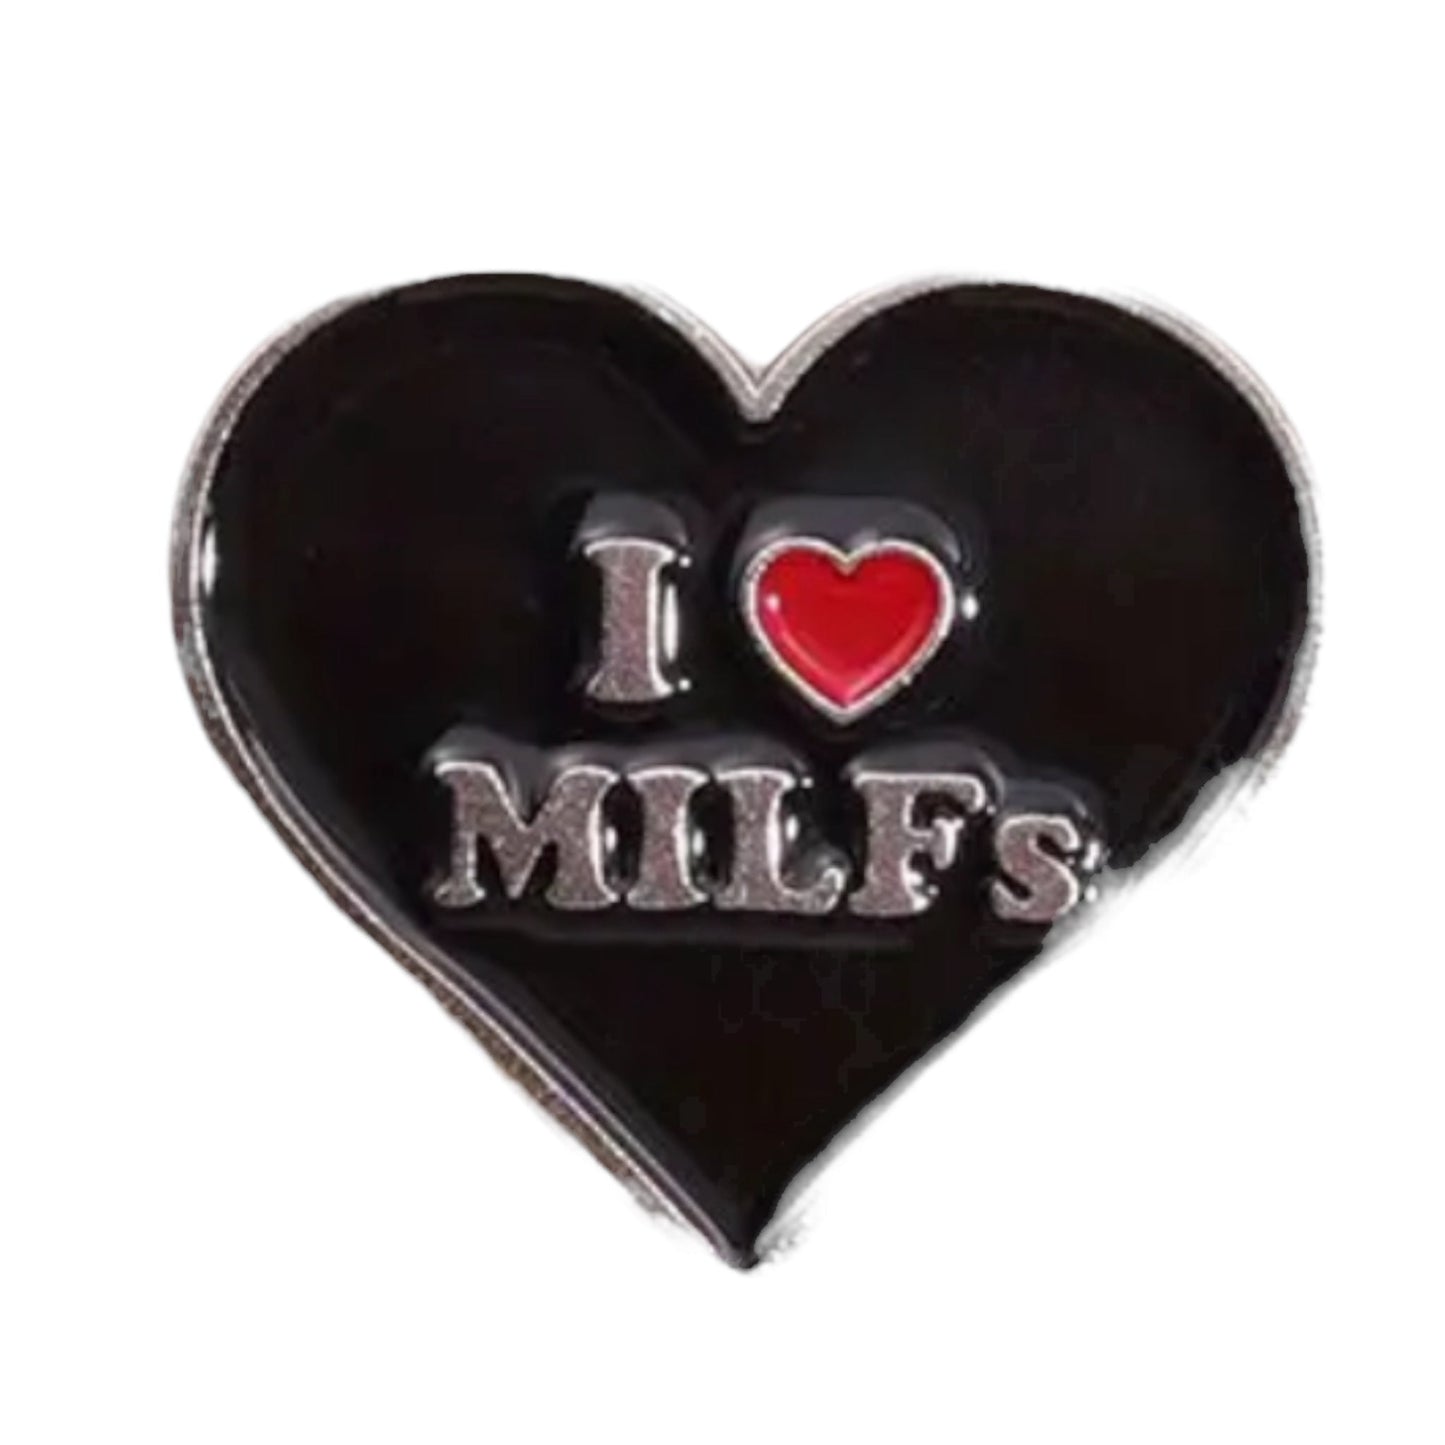 I Love Hot Milf’s, Dad’s, Moms Badjes voor Shirts - 3 Modellen